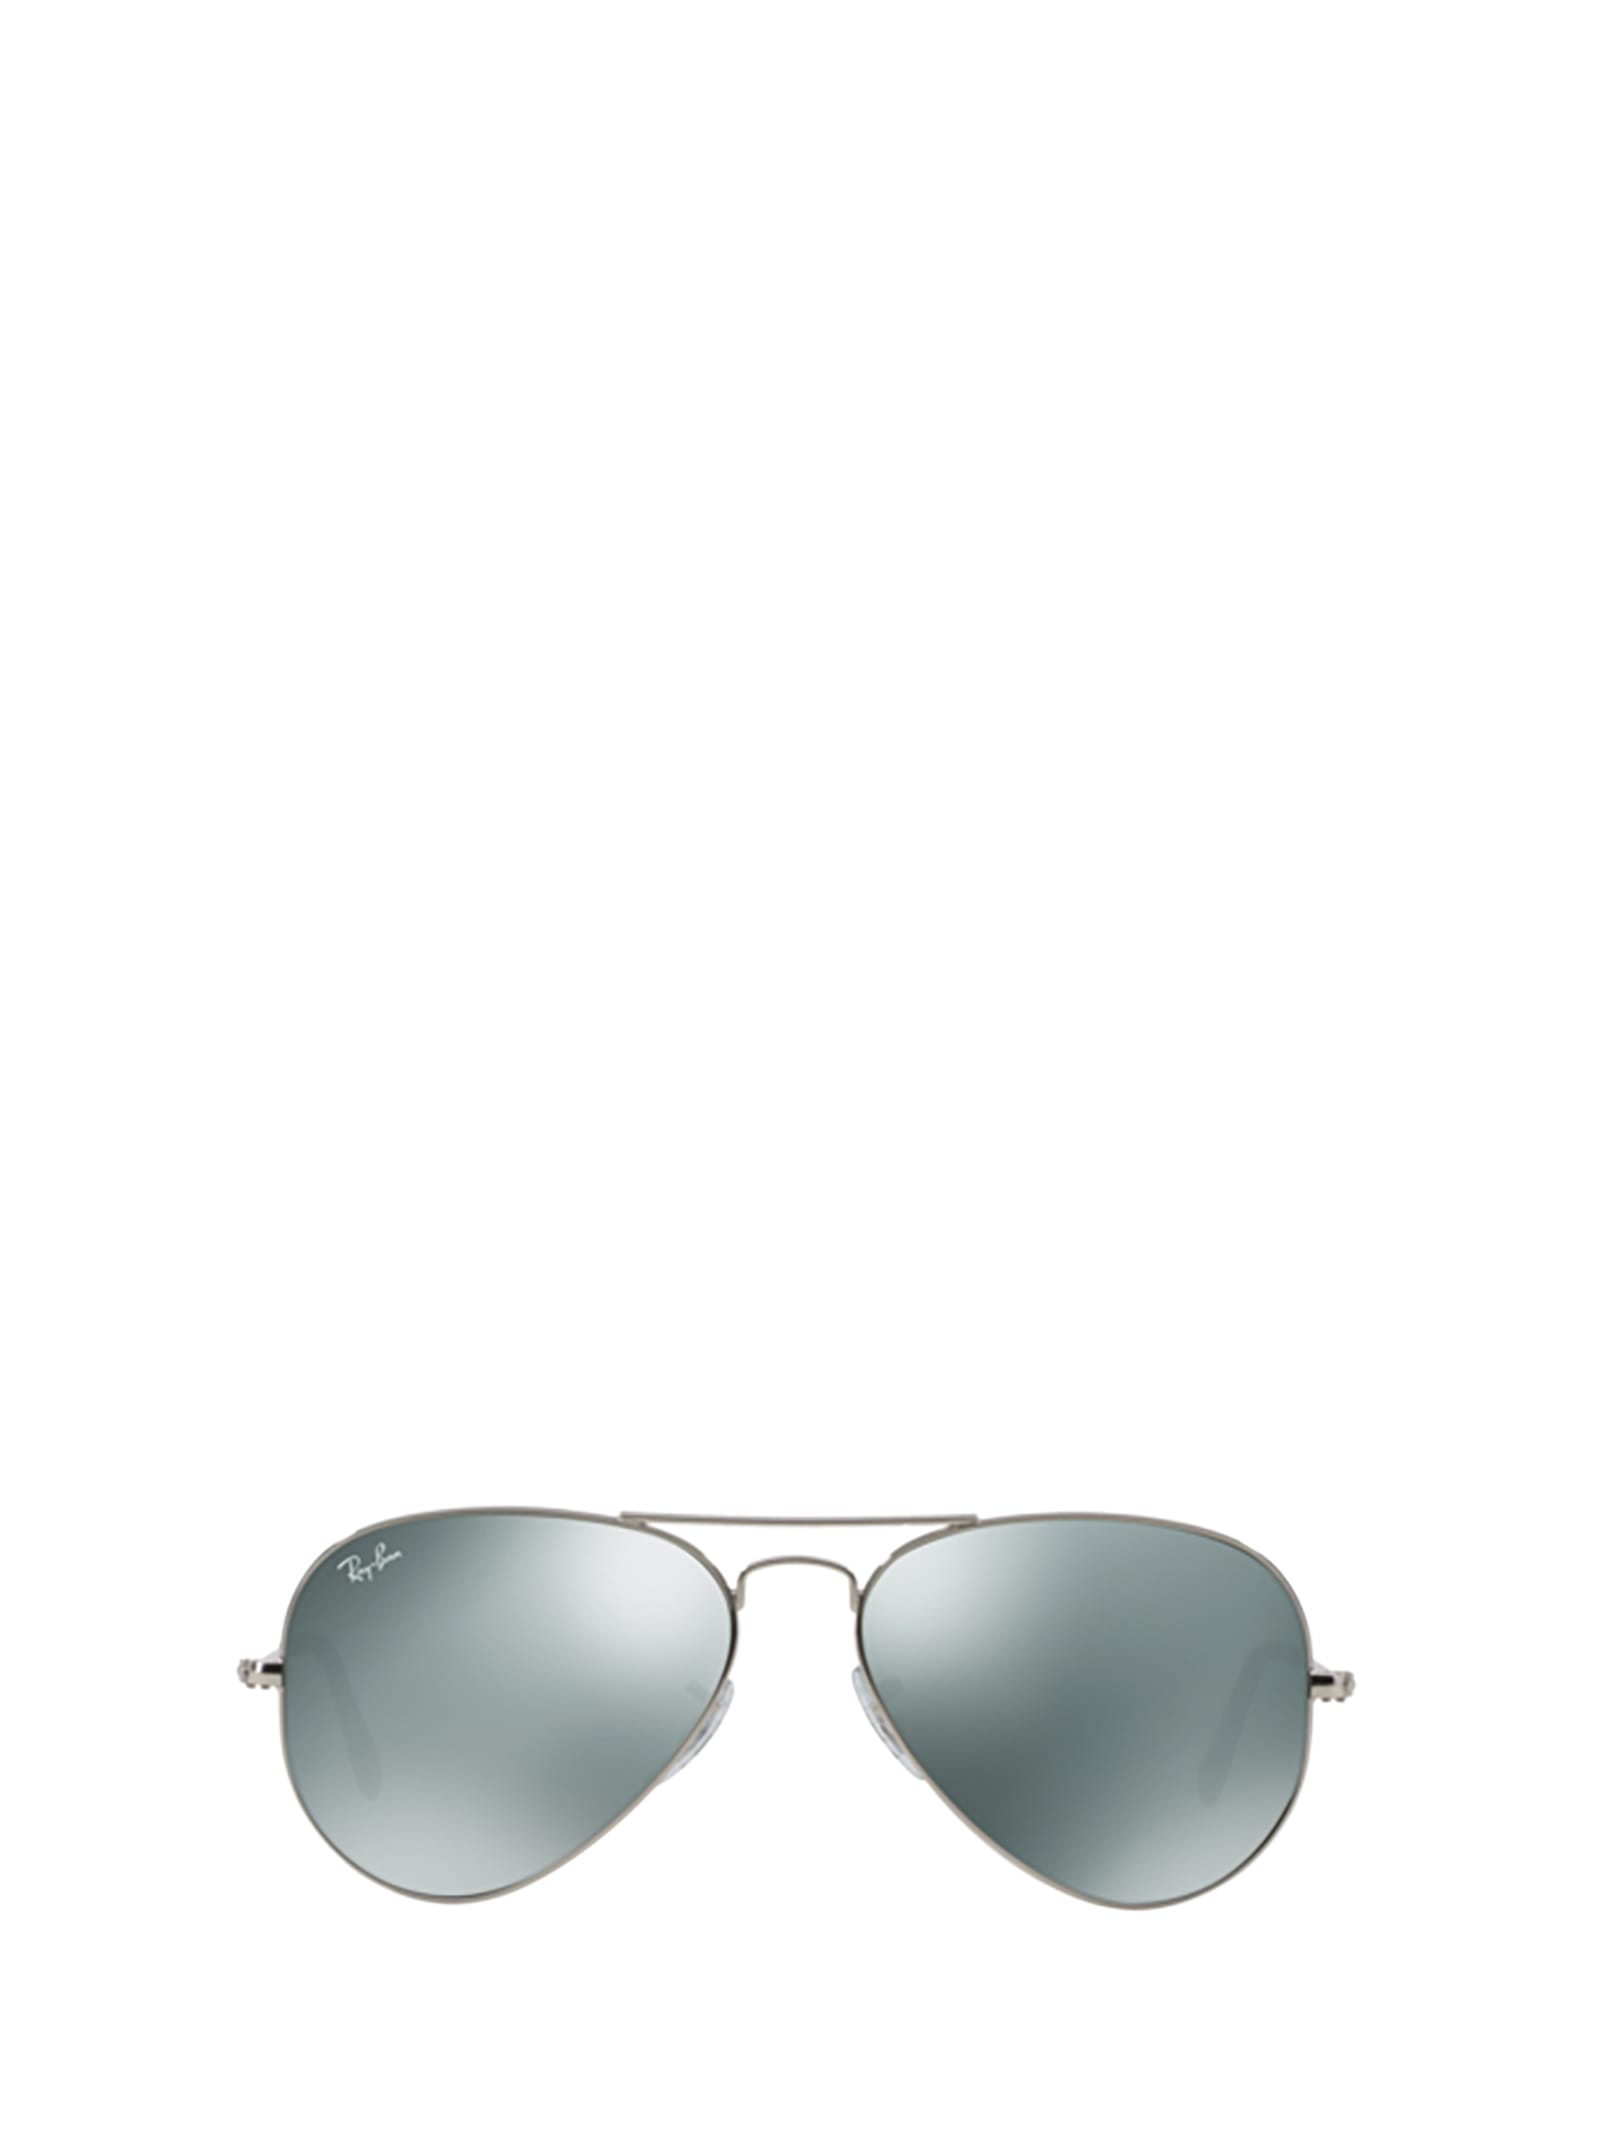 Shop Ray Ban Ray-ban Rb3025 Silver Sunglasses